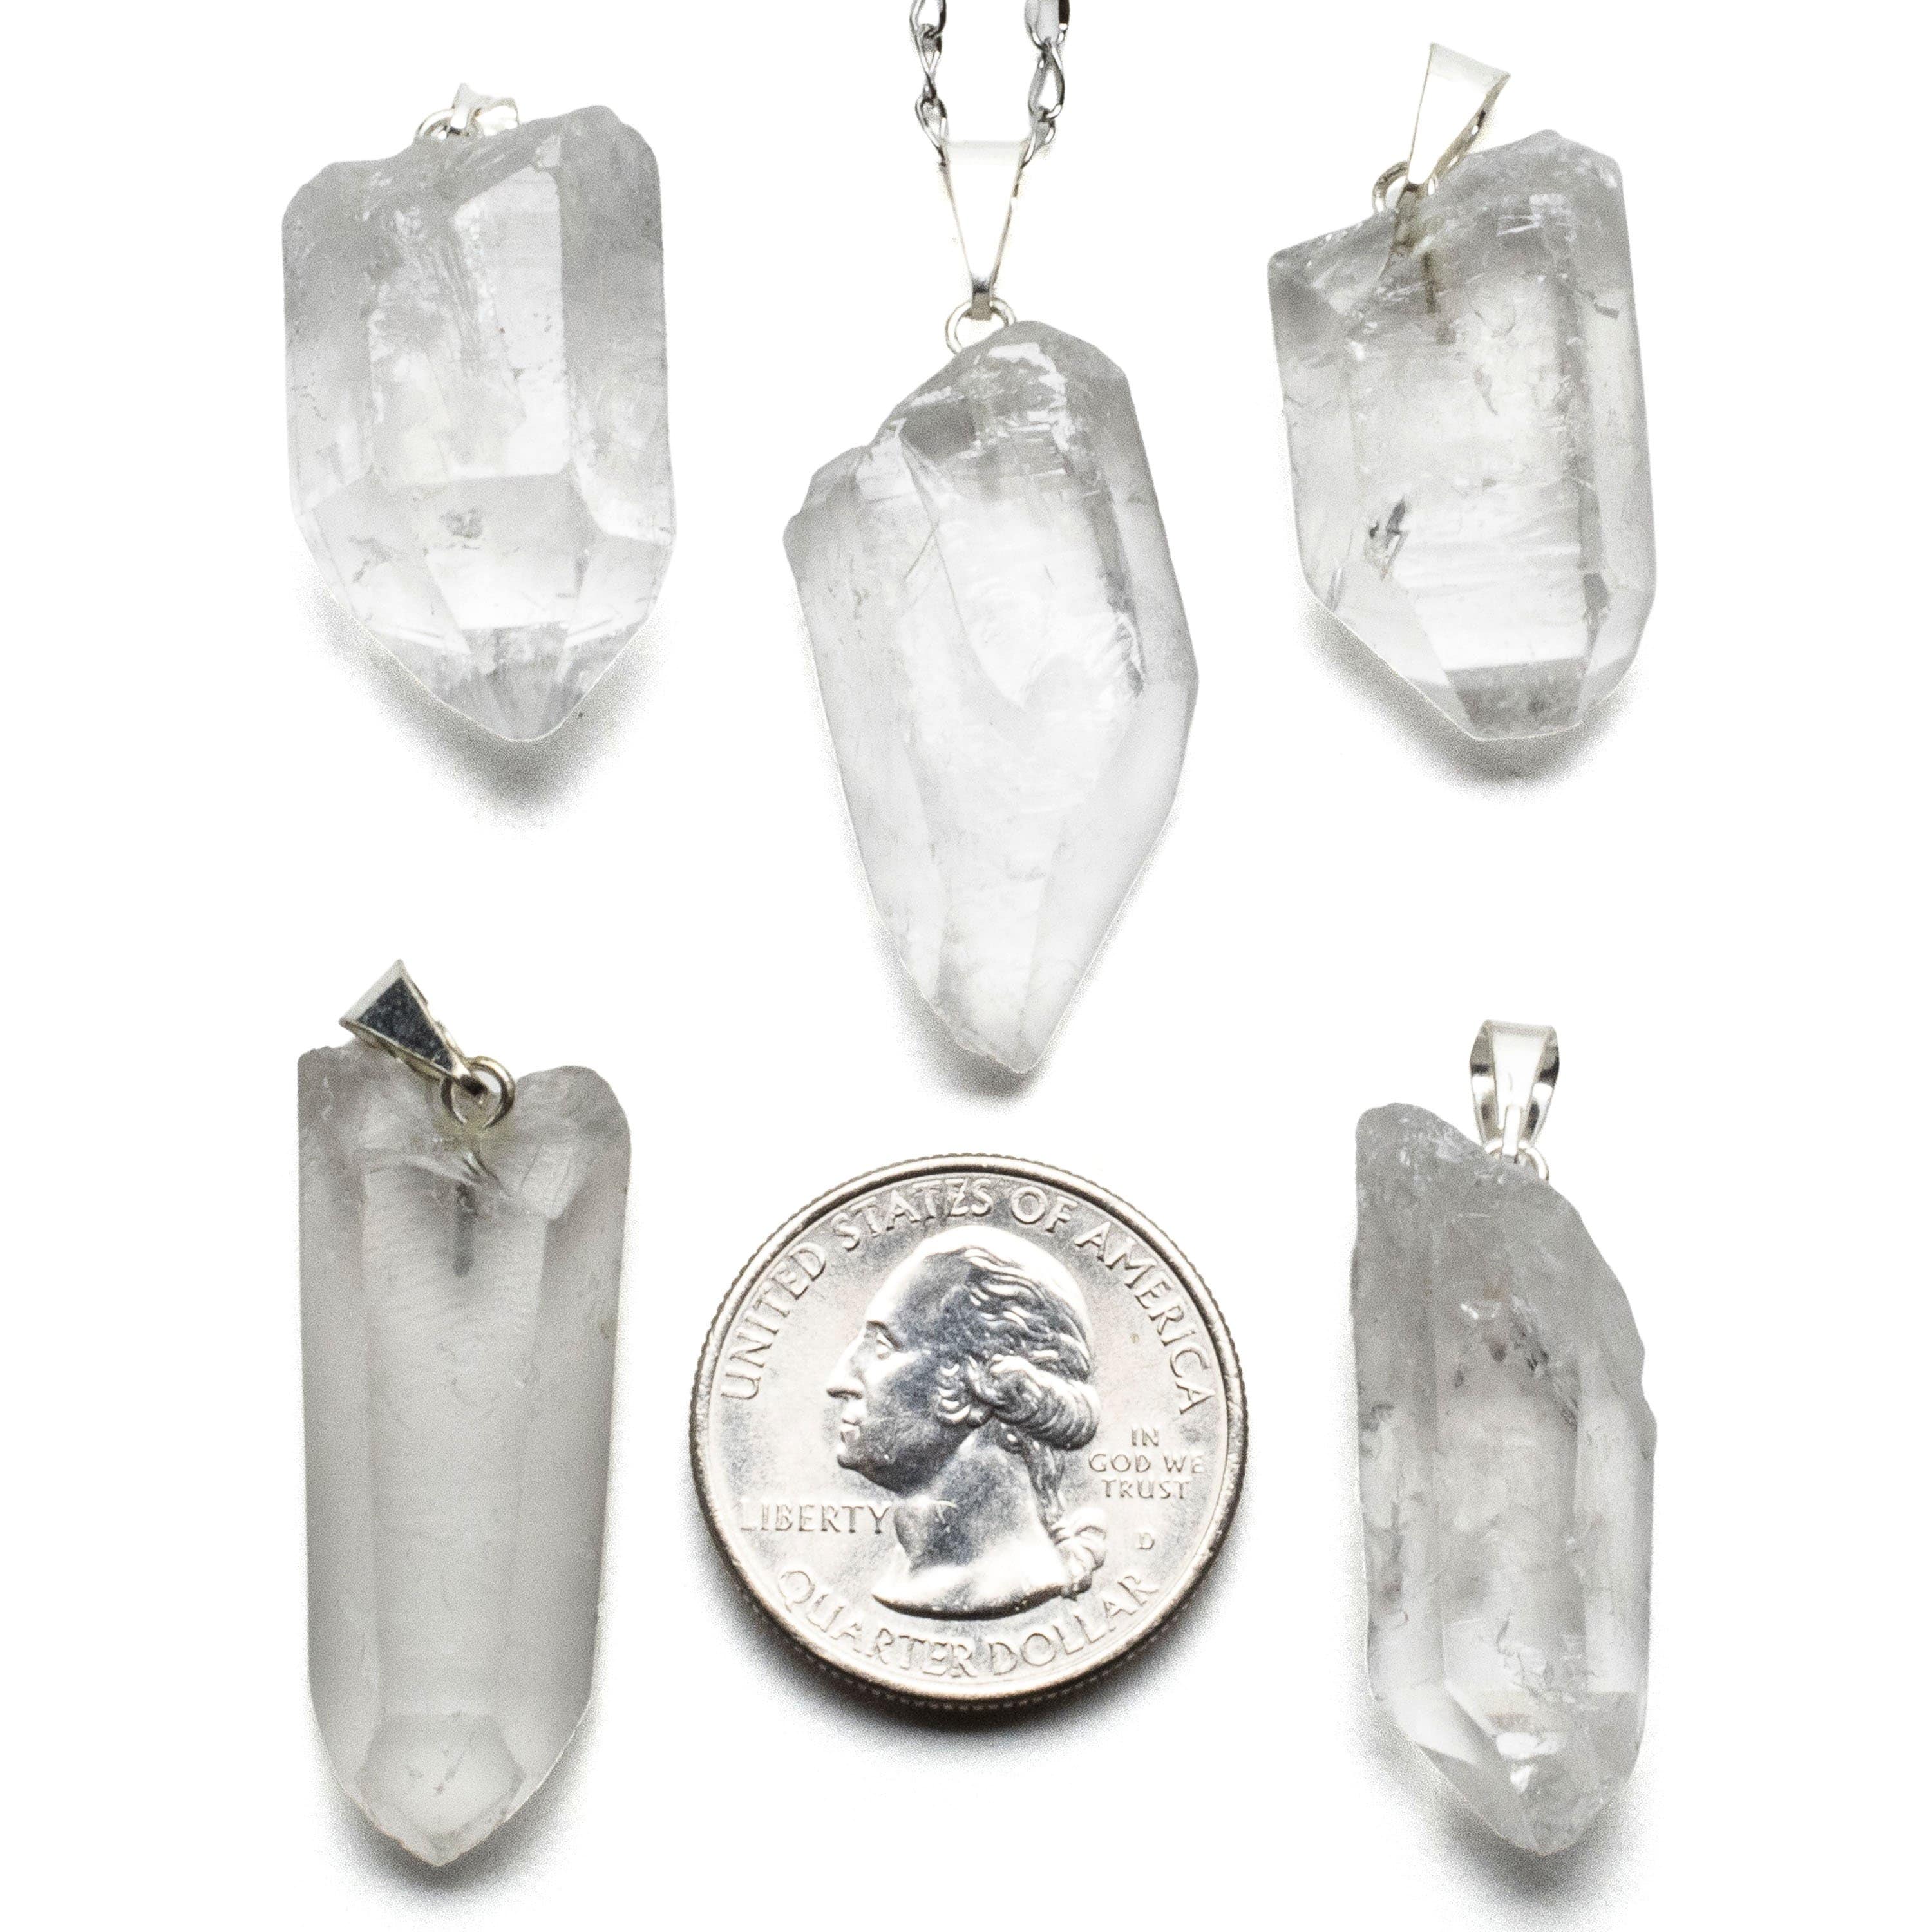 Kalifano Crystal Jewelry Raw Quartz Point Healing Stone Pendant CJ20-RQZ